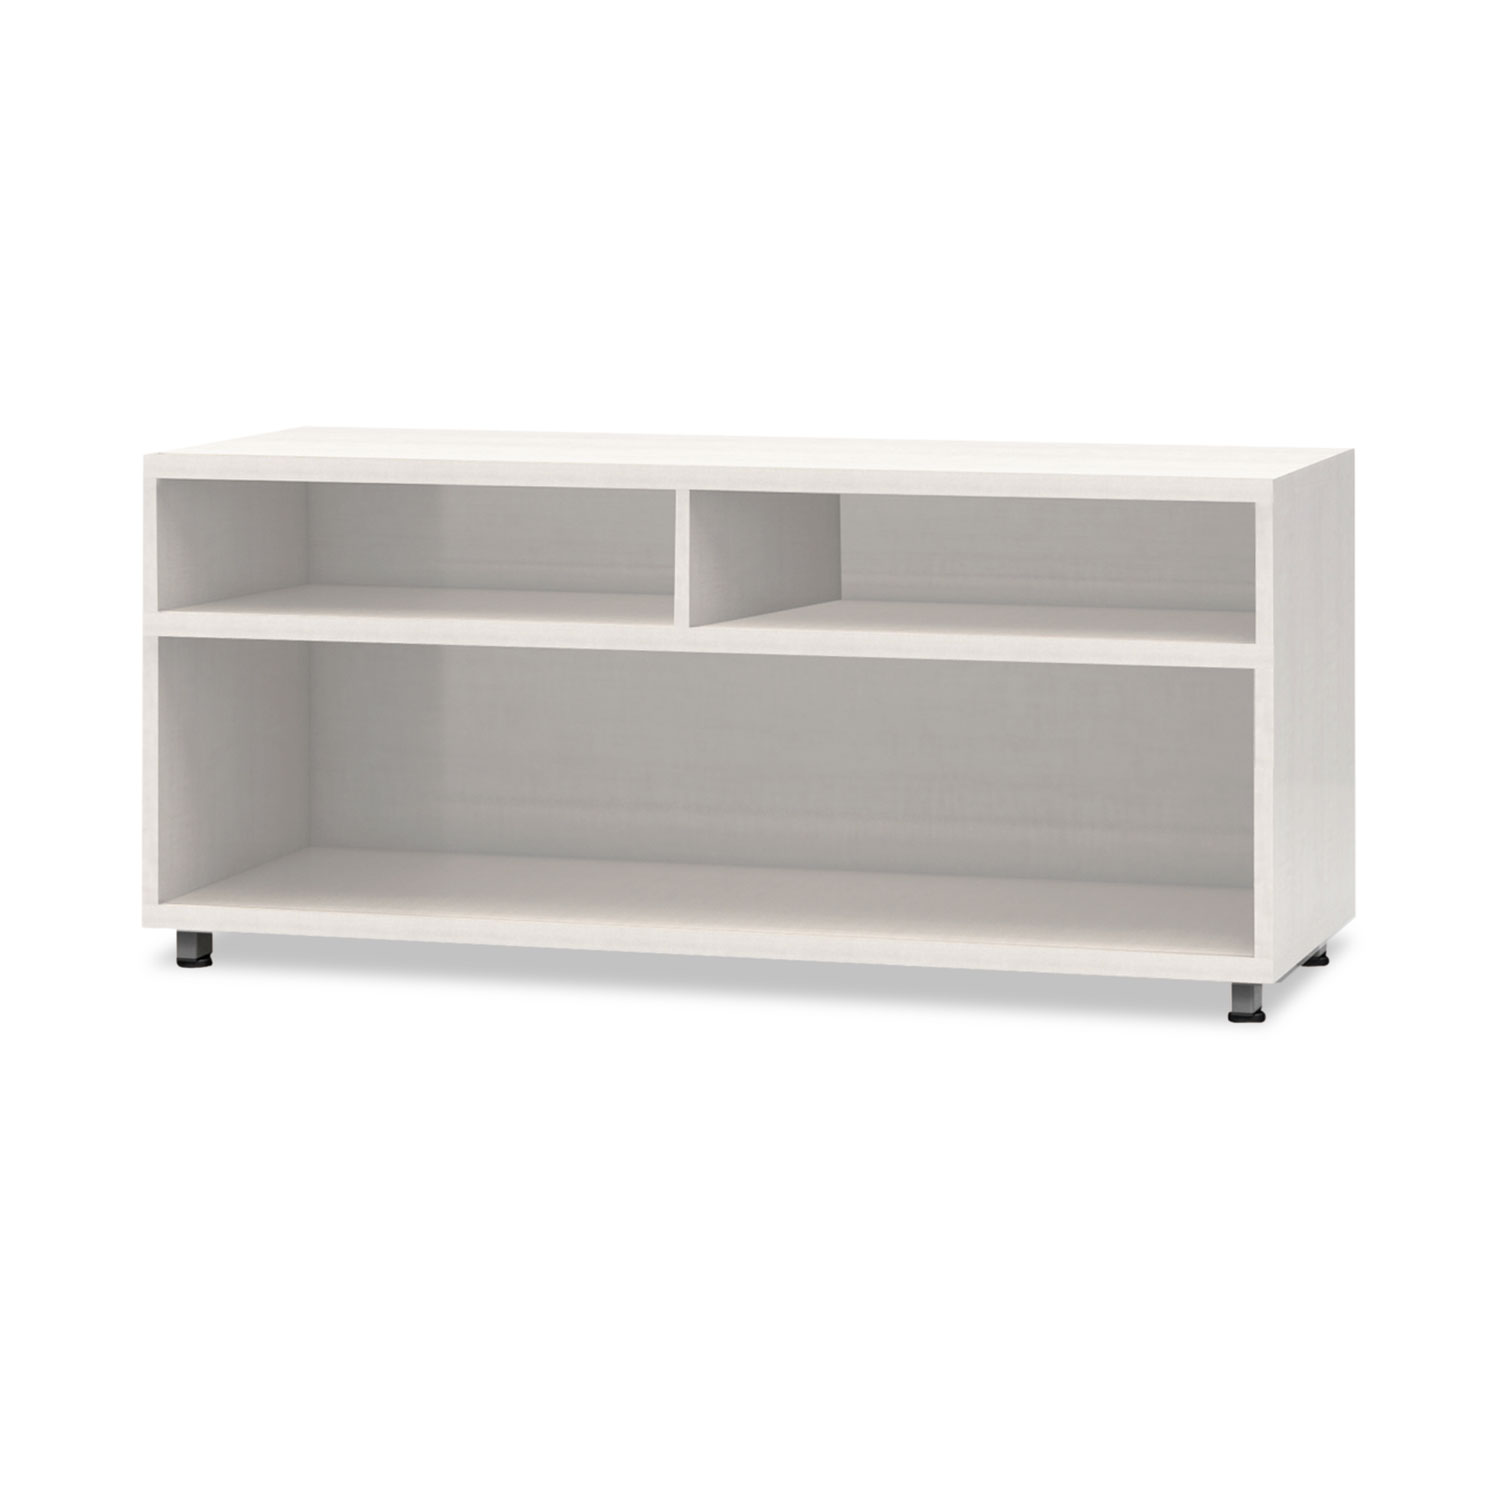  Safco EZ3623AGZ e5 Series Open Storage Cabinet, 36w x 18d x 23h, White (MLNEZ3623AGZ) 